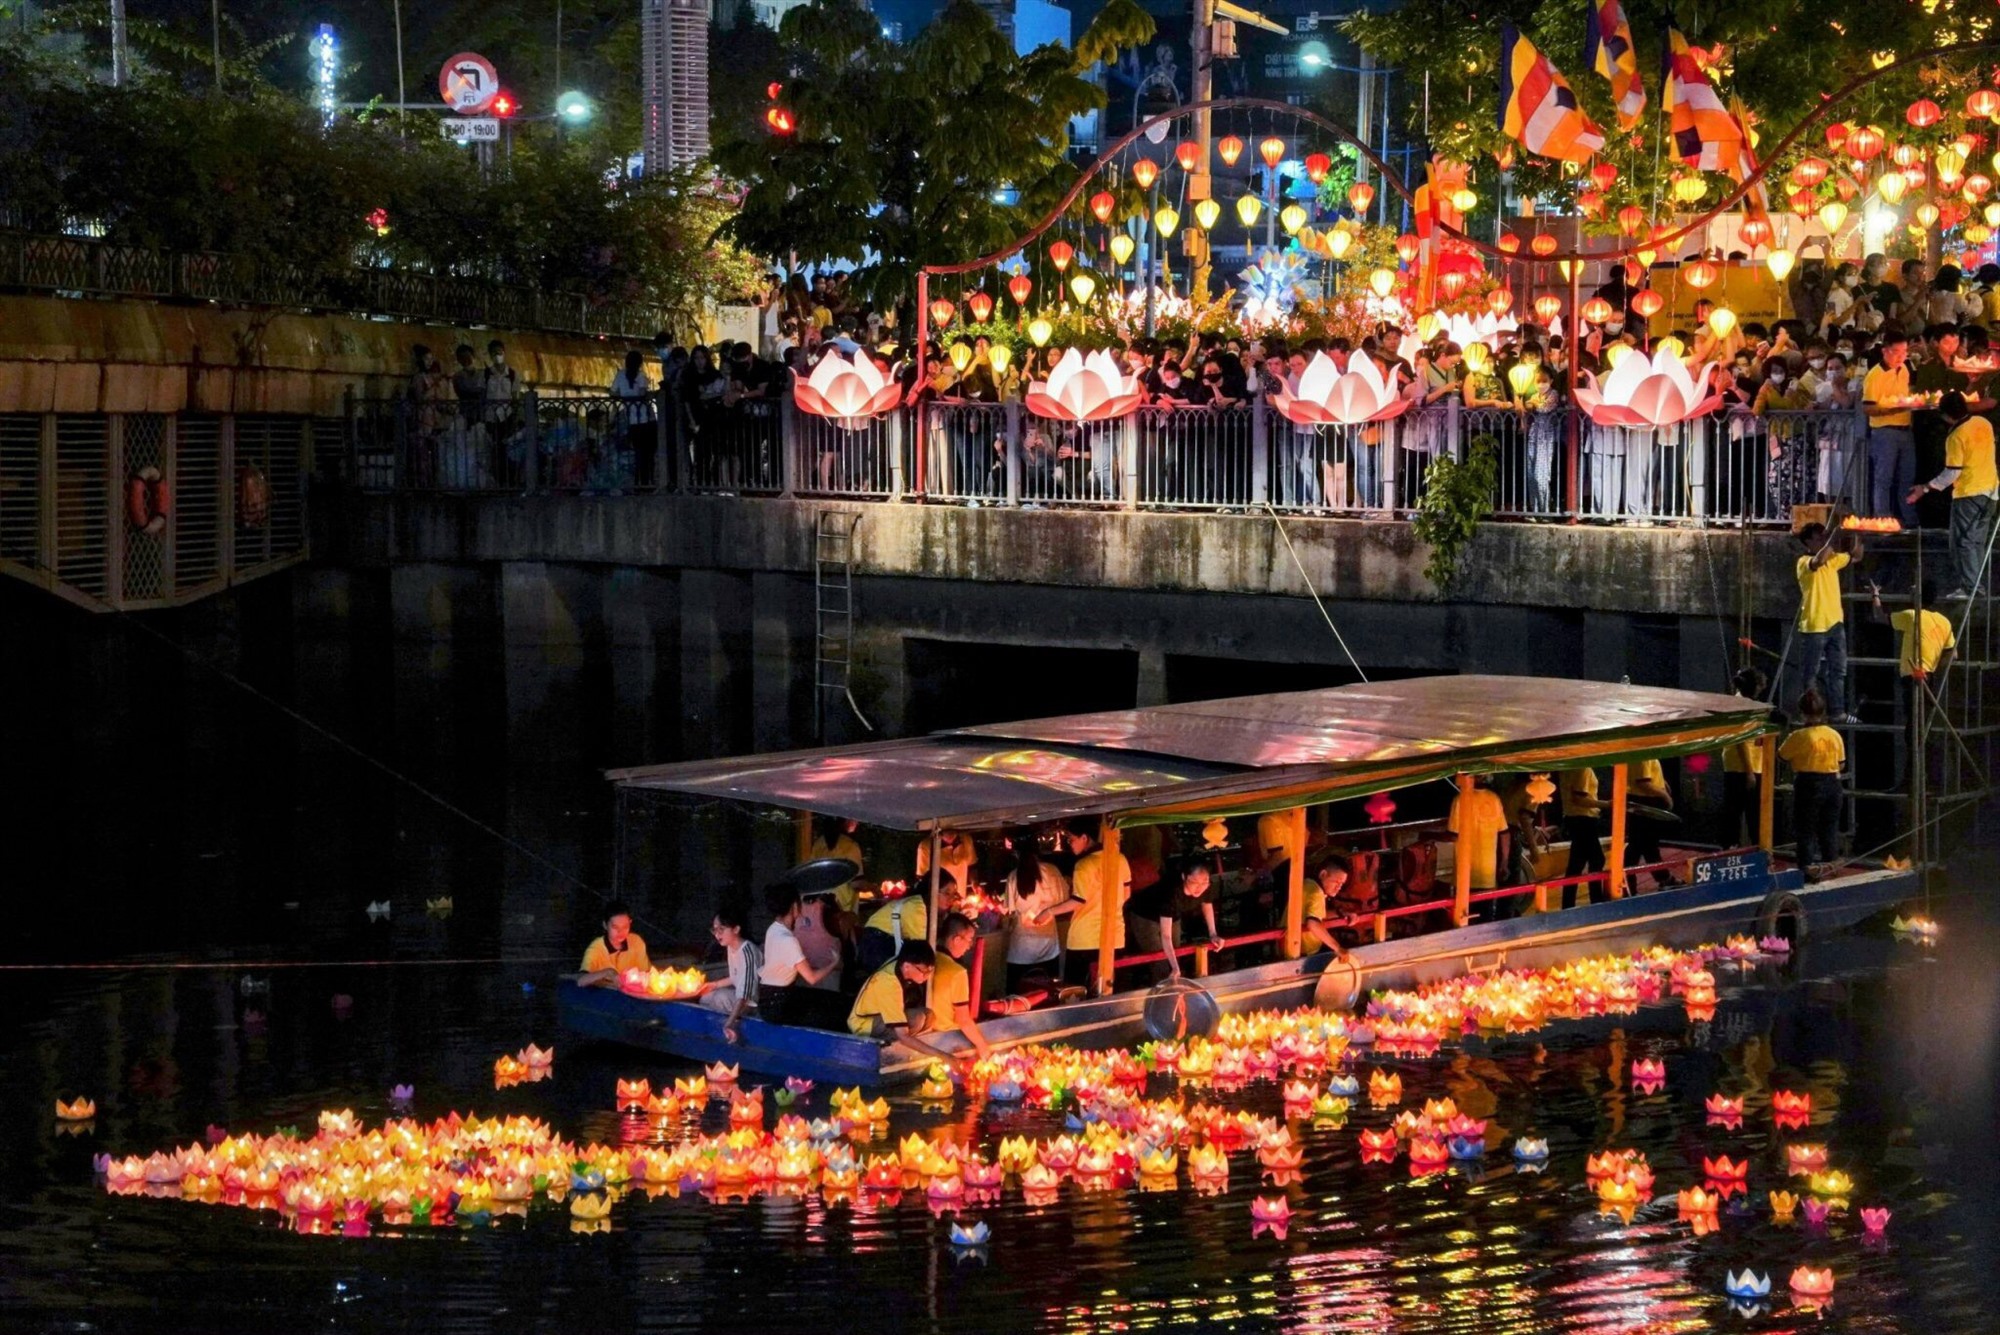 Những chiếc lồng đèn hình hoa sen lung linh vào lễ Phật đản (15/4 âm lịch) năm 2018. Hàng năm, trong dịp Phật đản, suốt 3 km hai bờ lung linh sắc đèn lồng; đến tối nhiều người dân, phật tử thả hoa đăng trên kênh khi đi lễ chùa.